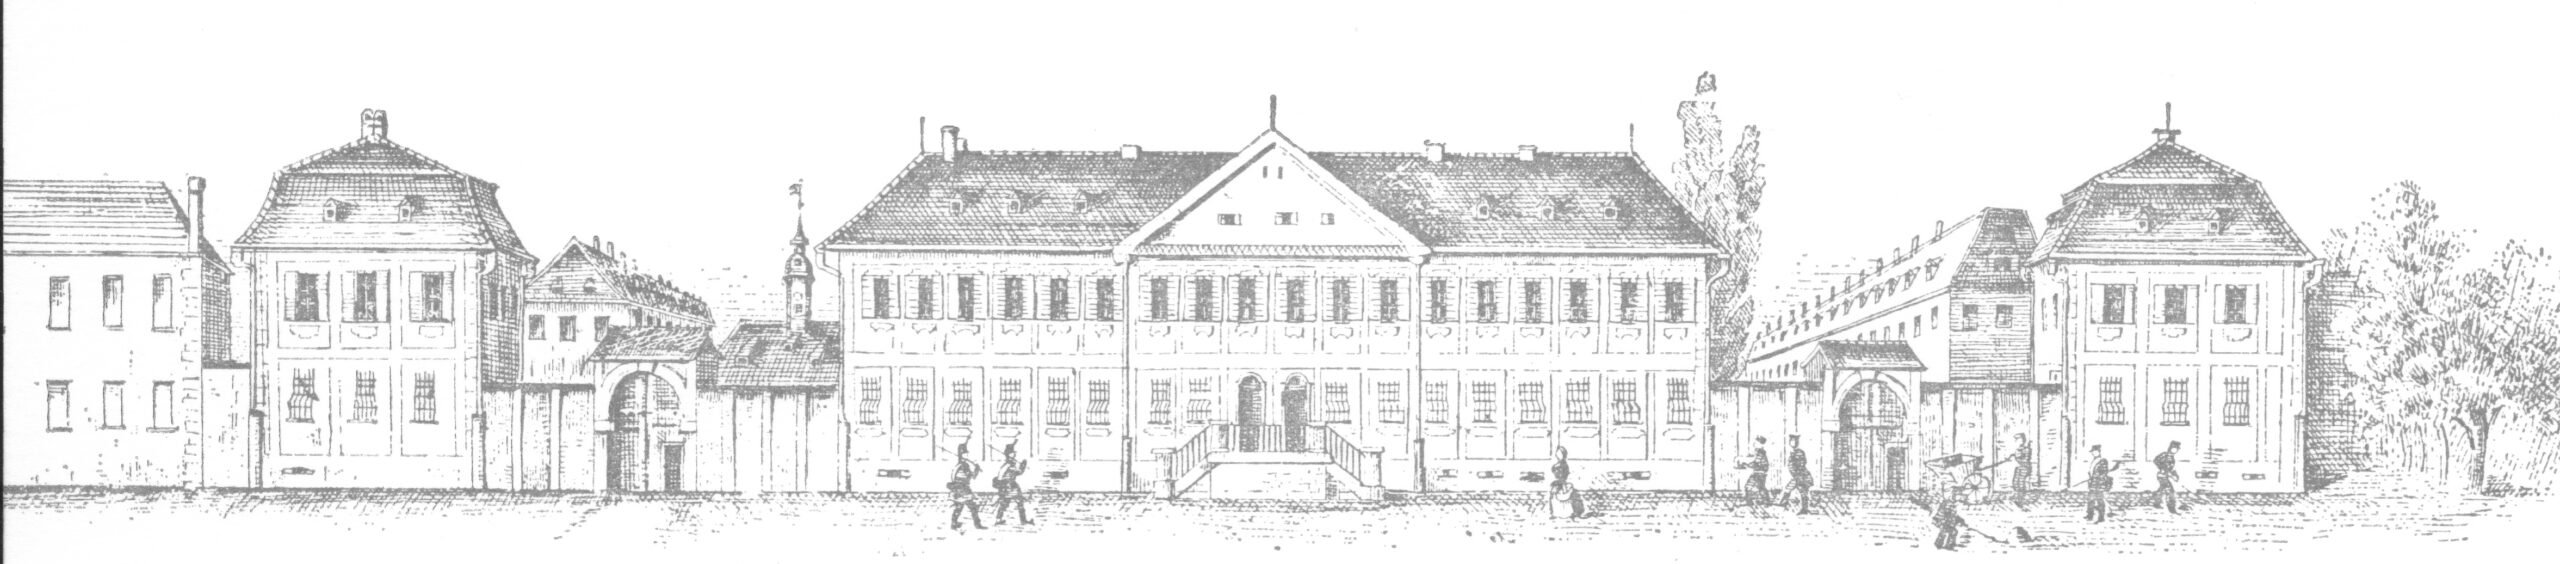 schwarz-weiße Zeichnung der Straßenfront des ehemaligen Zuchthauses in Ludwigsburg im 19. Jahrhundert